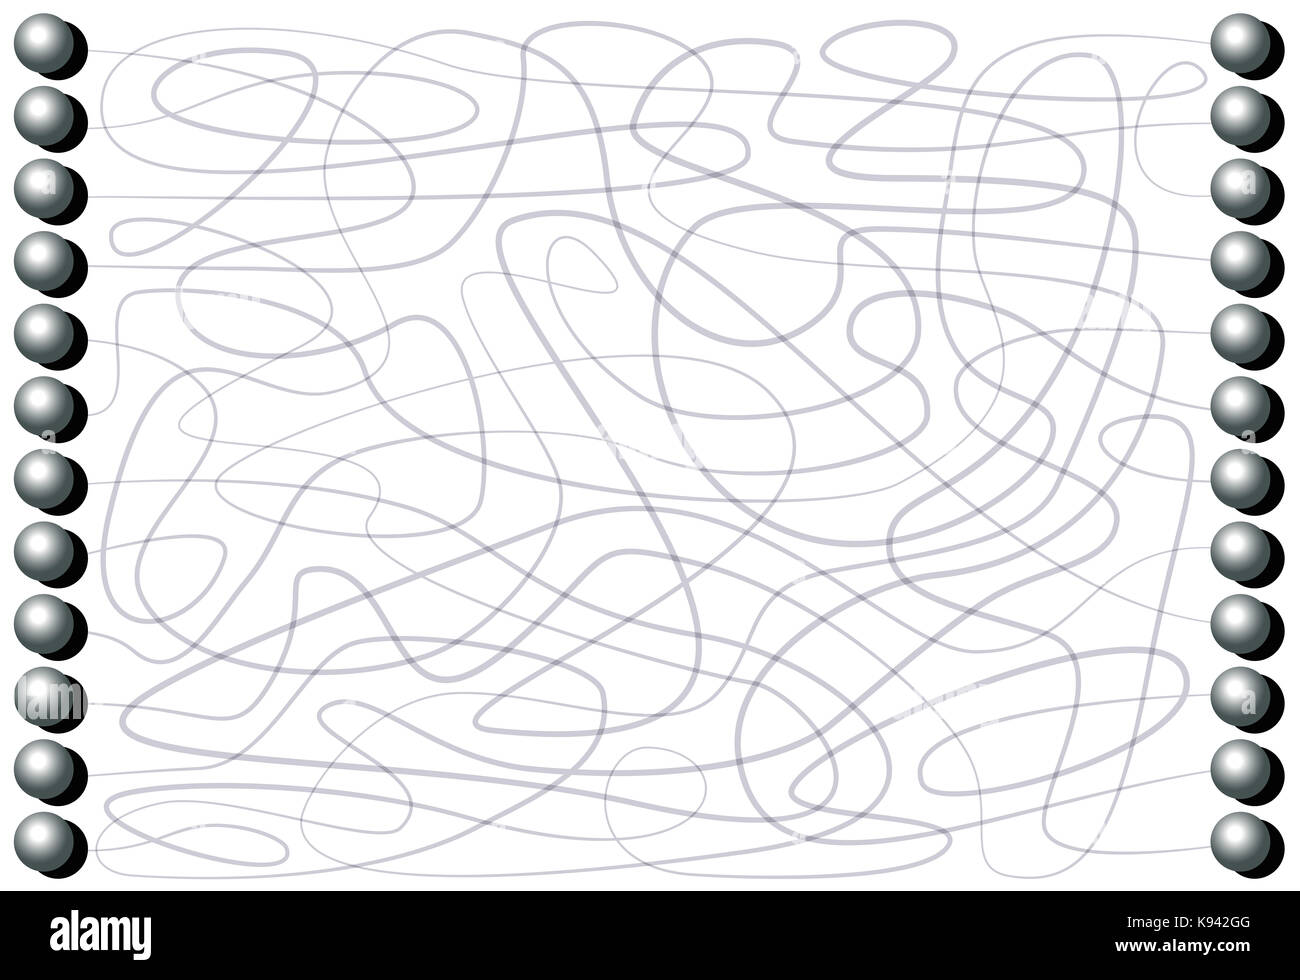 Labyrinth mit Eisen Bälle durch Linien durch einen gewundenen Pfad Muster angeschlossen werden - Konzentration Spiel für Kinder und Erwachsene. Stockfoto